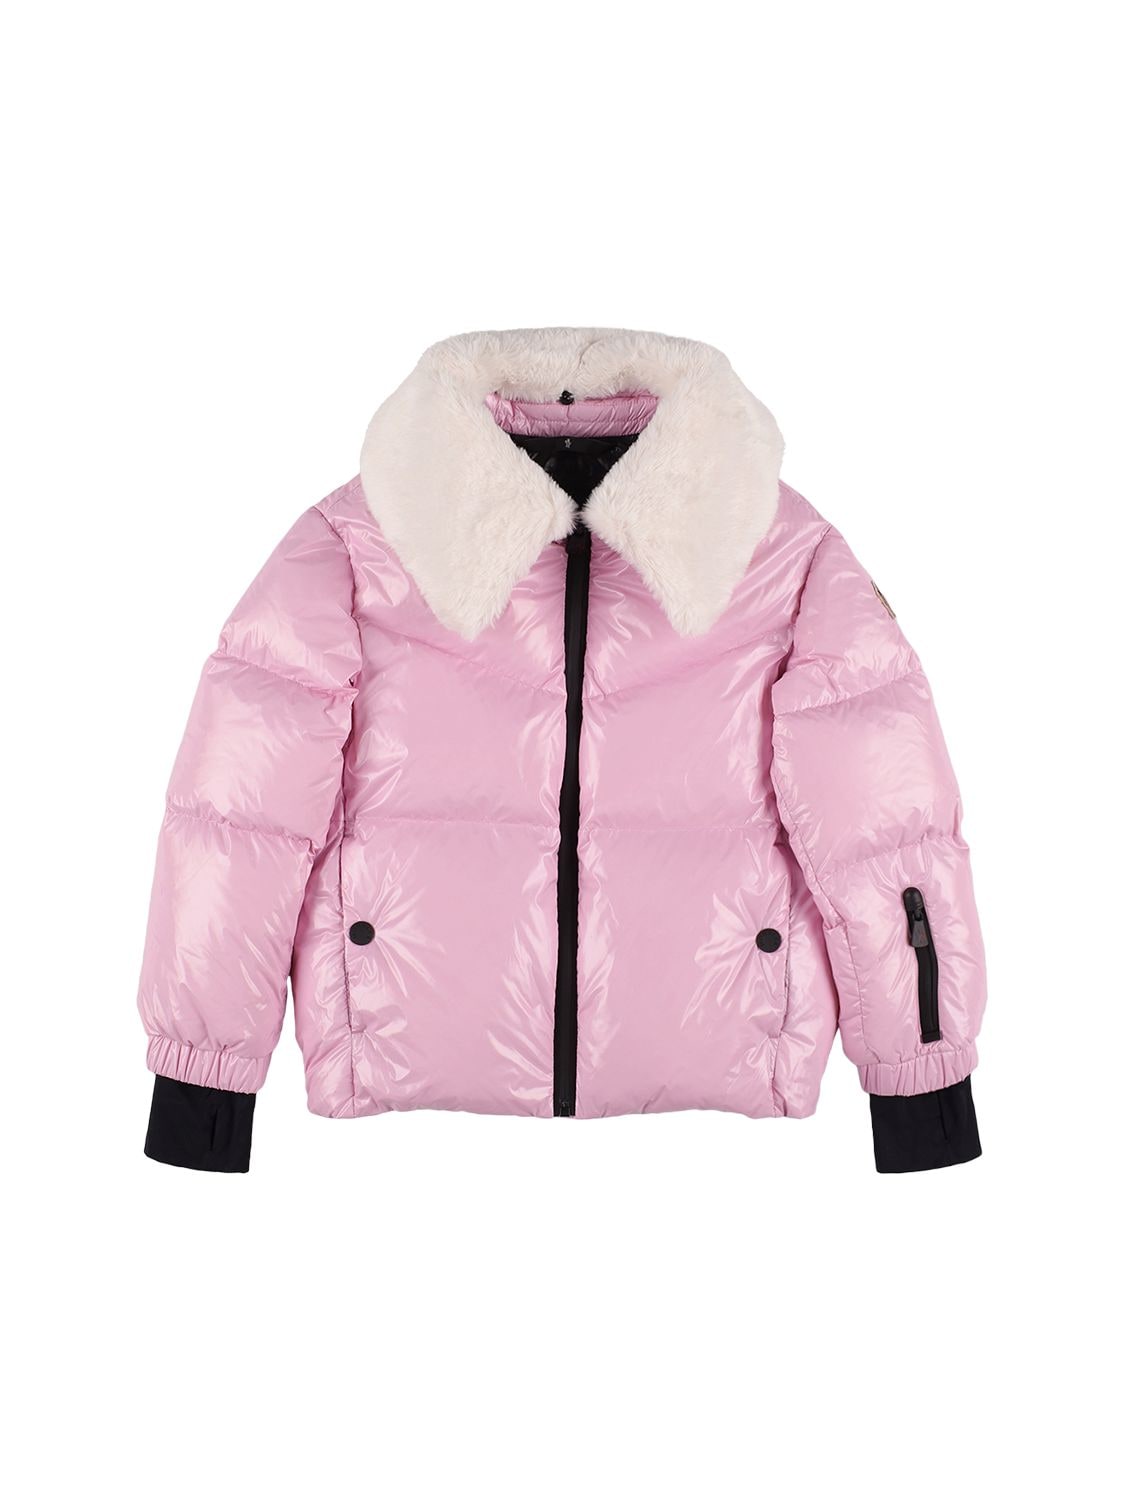 Moncler Grenoble Kids' Edling Nylon Down Ski Jacket In Pink